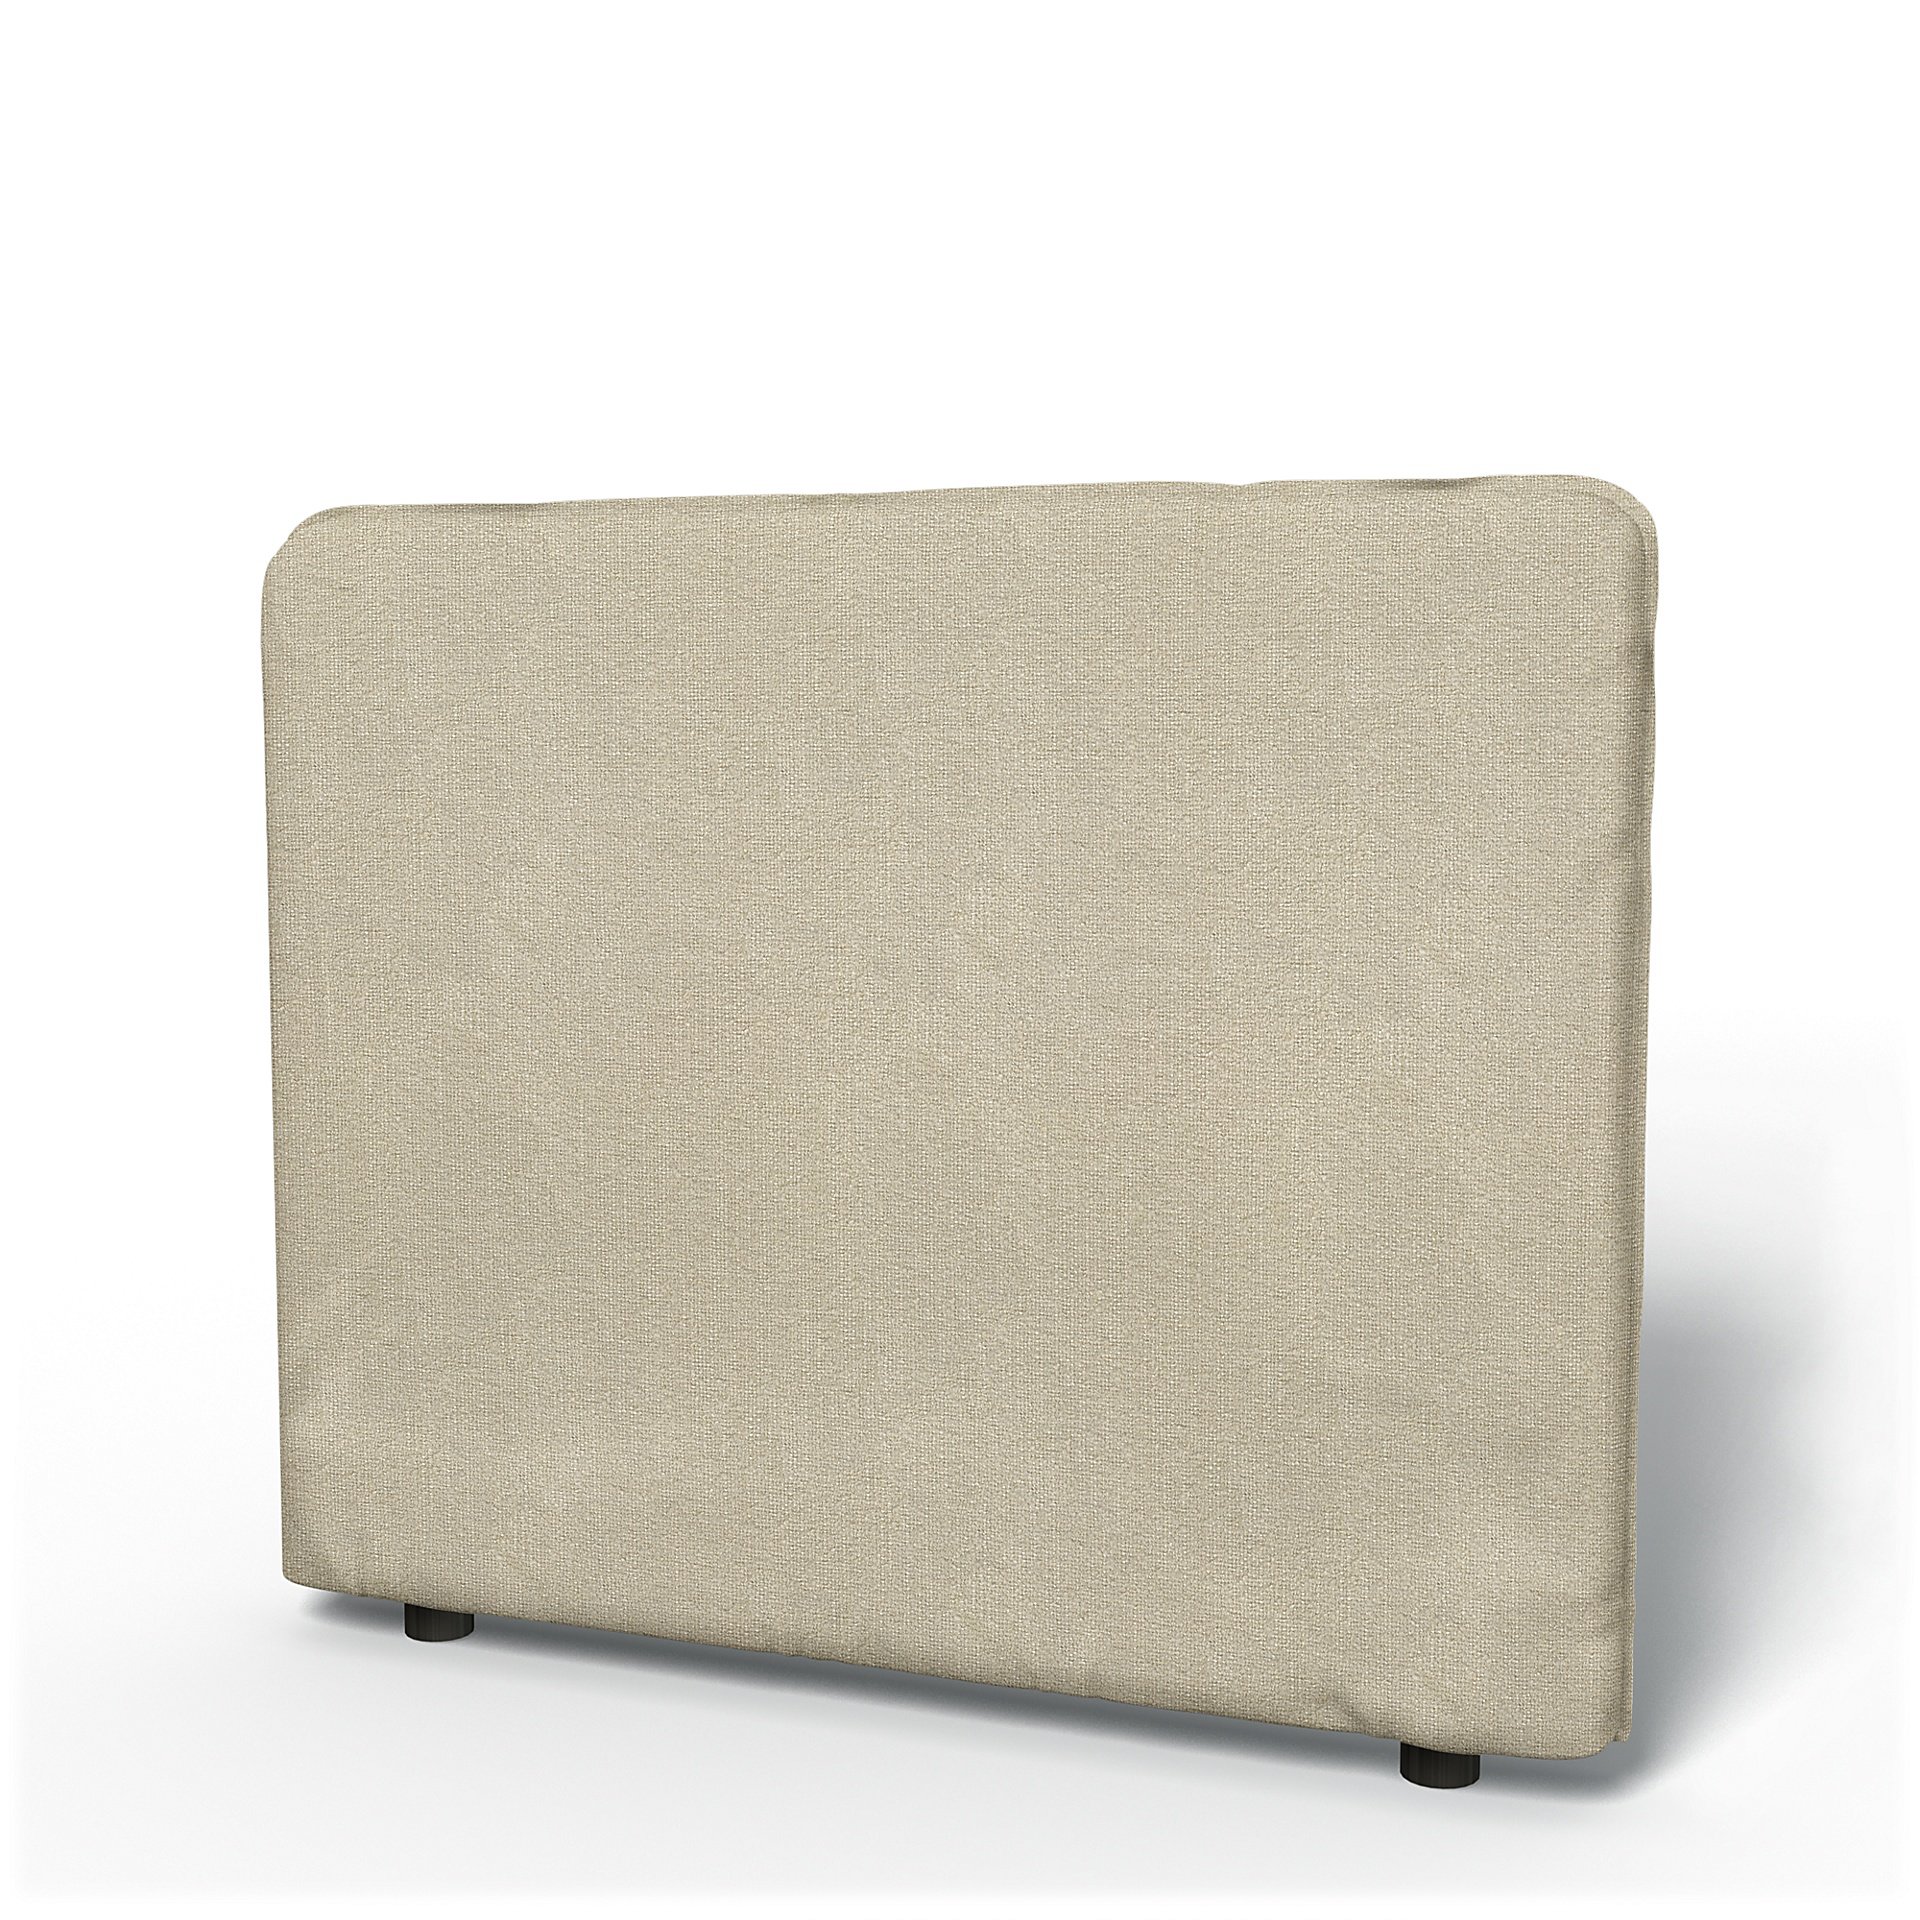 IKEA - Vallentuna Low Backrest Cover 100x80cm 39x32in, Cream, Boucle & Texture - Bemz